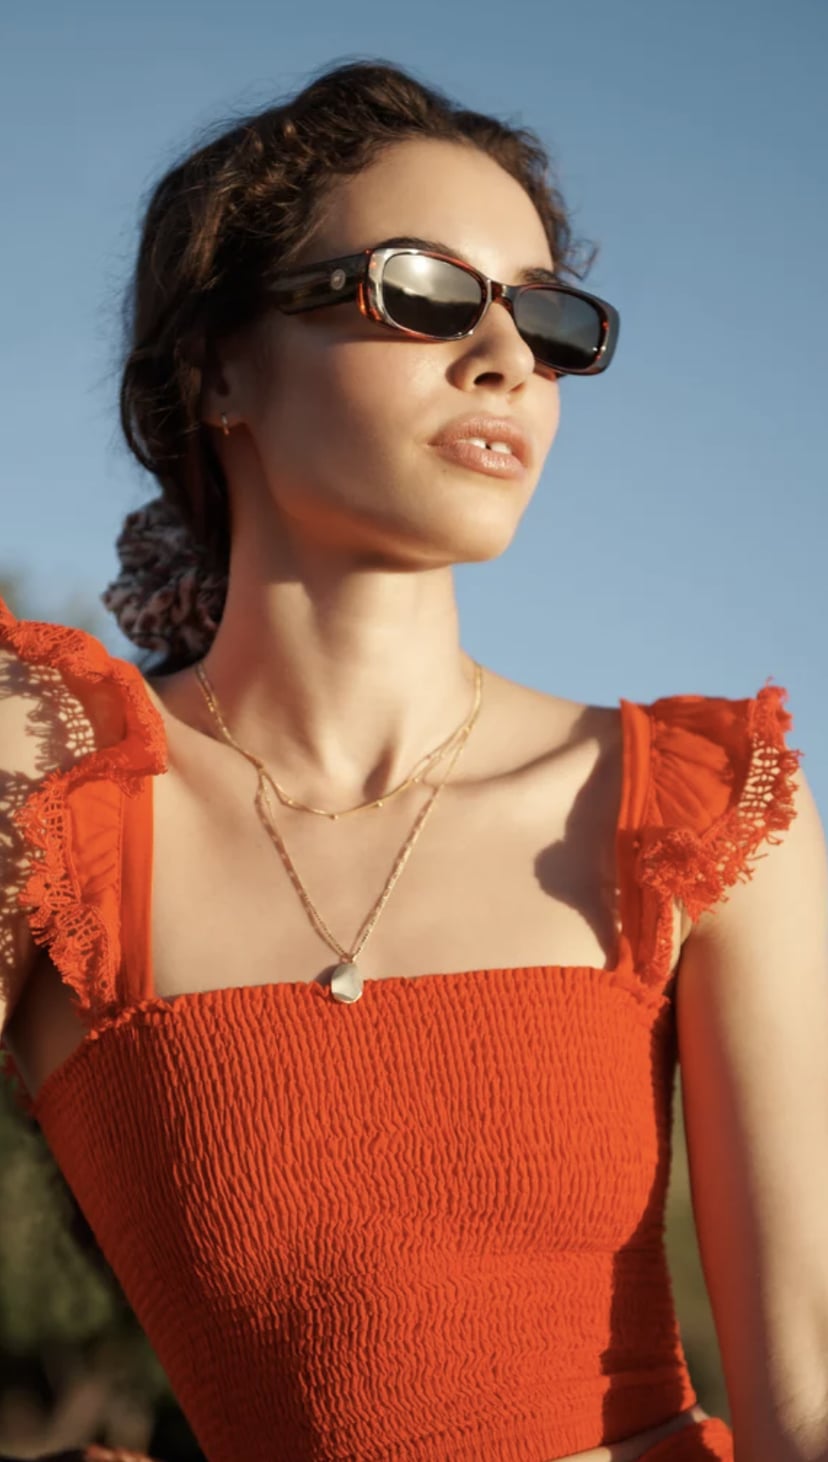 Cheap designer sunglasses for women 2022, The Sun UK